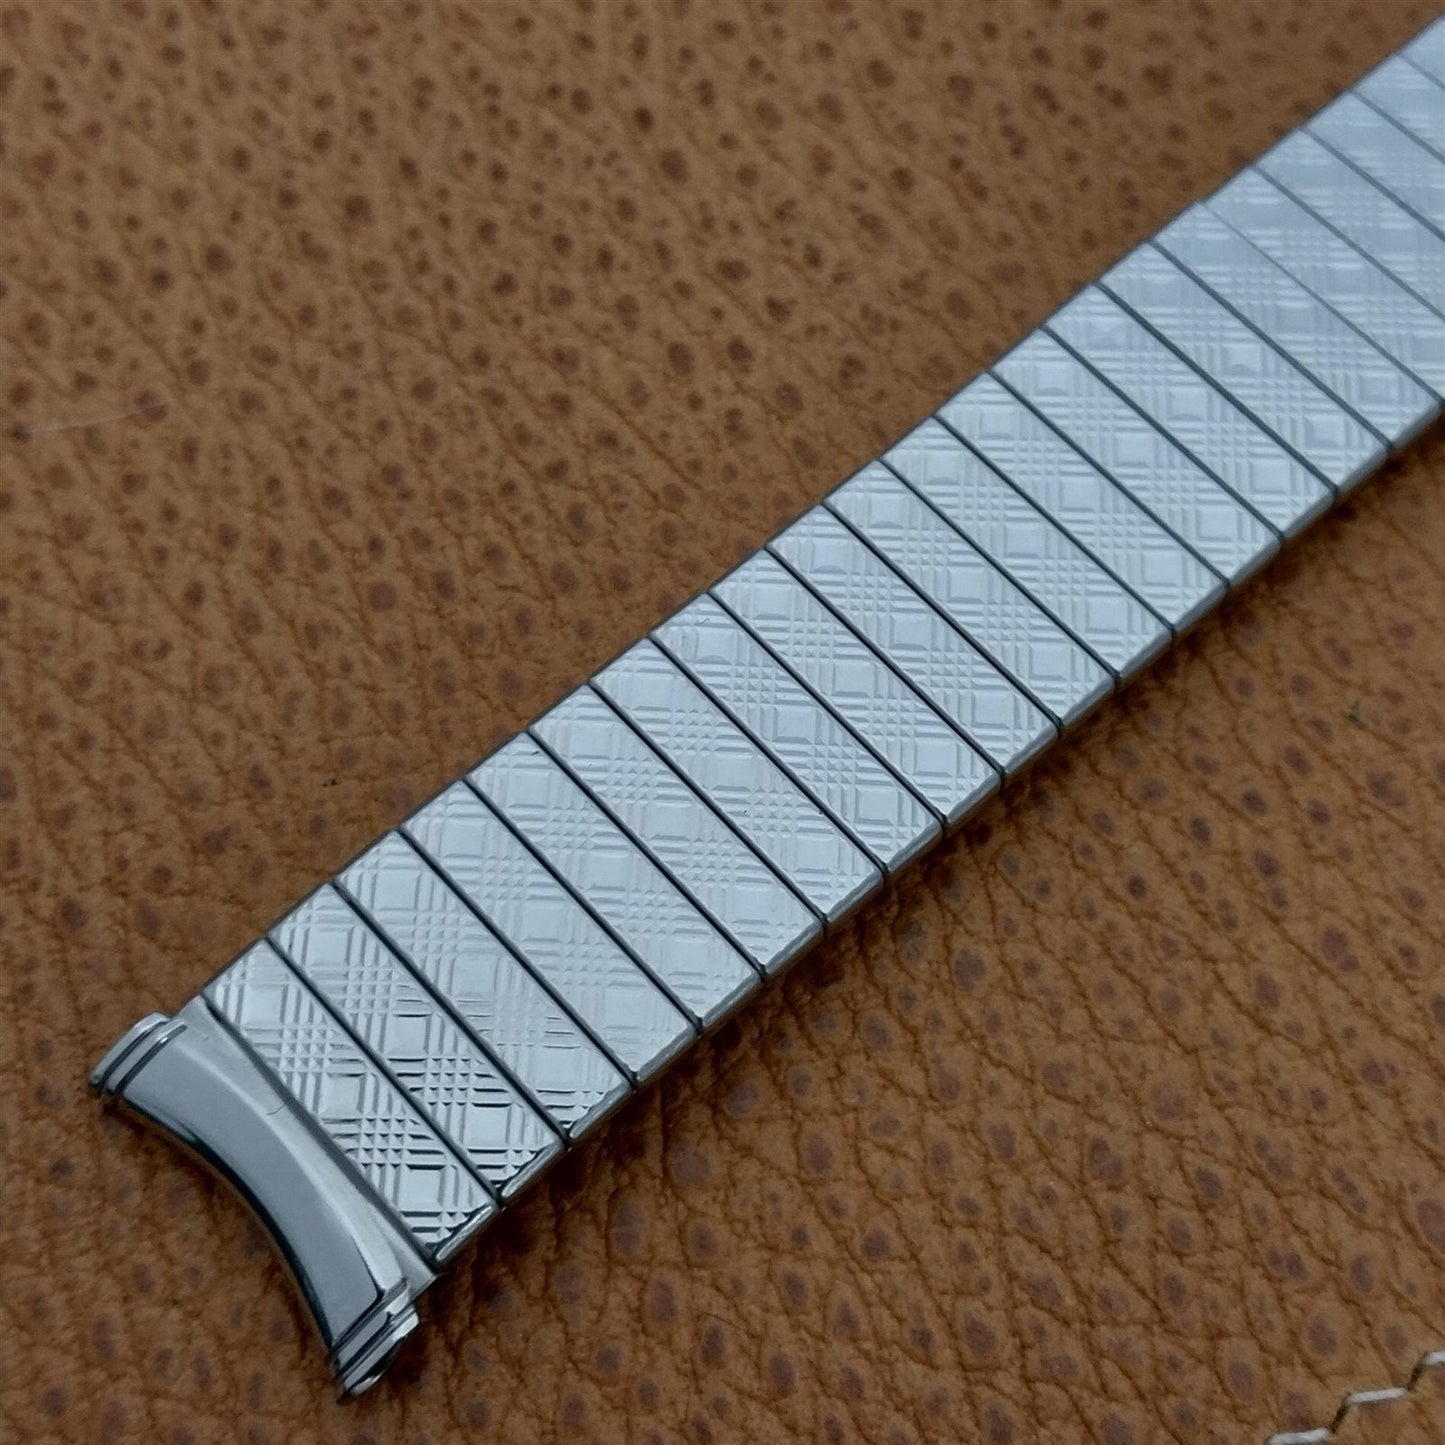 19mm 18mm 17mm Kreisler Stainless Steel Classic Unused 1960s Vintage Watch Band